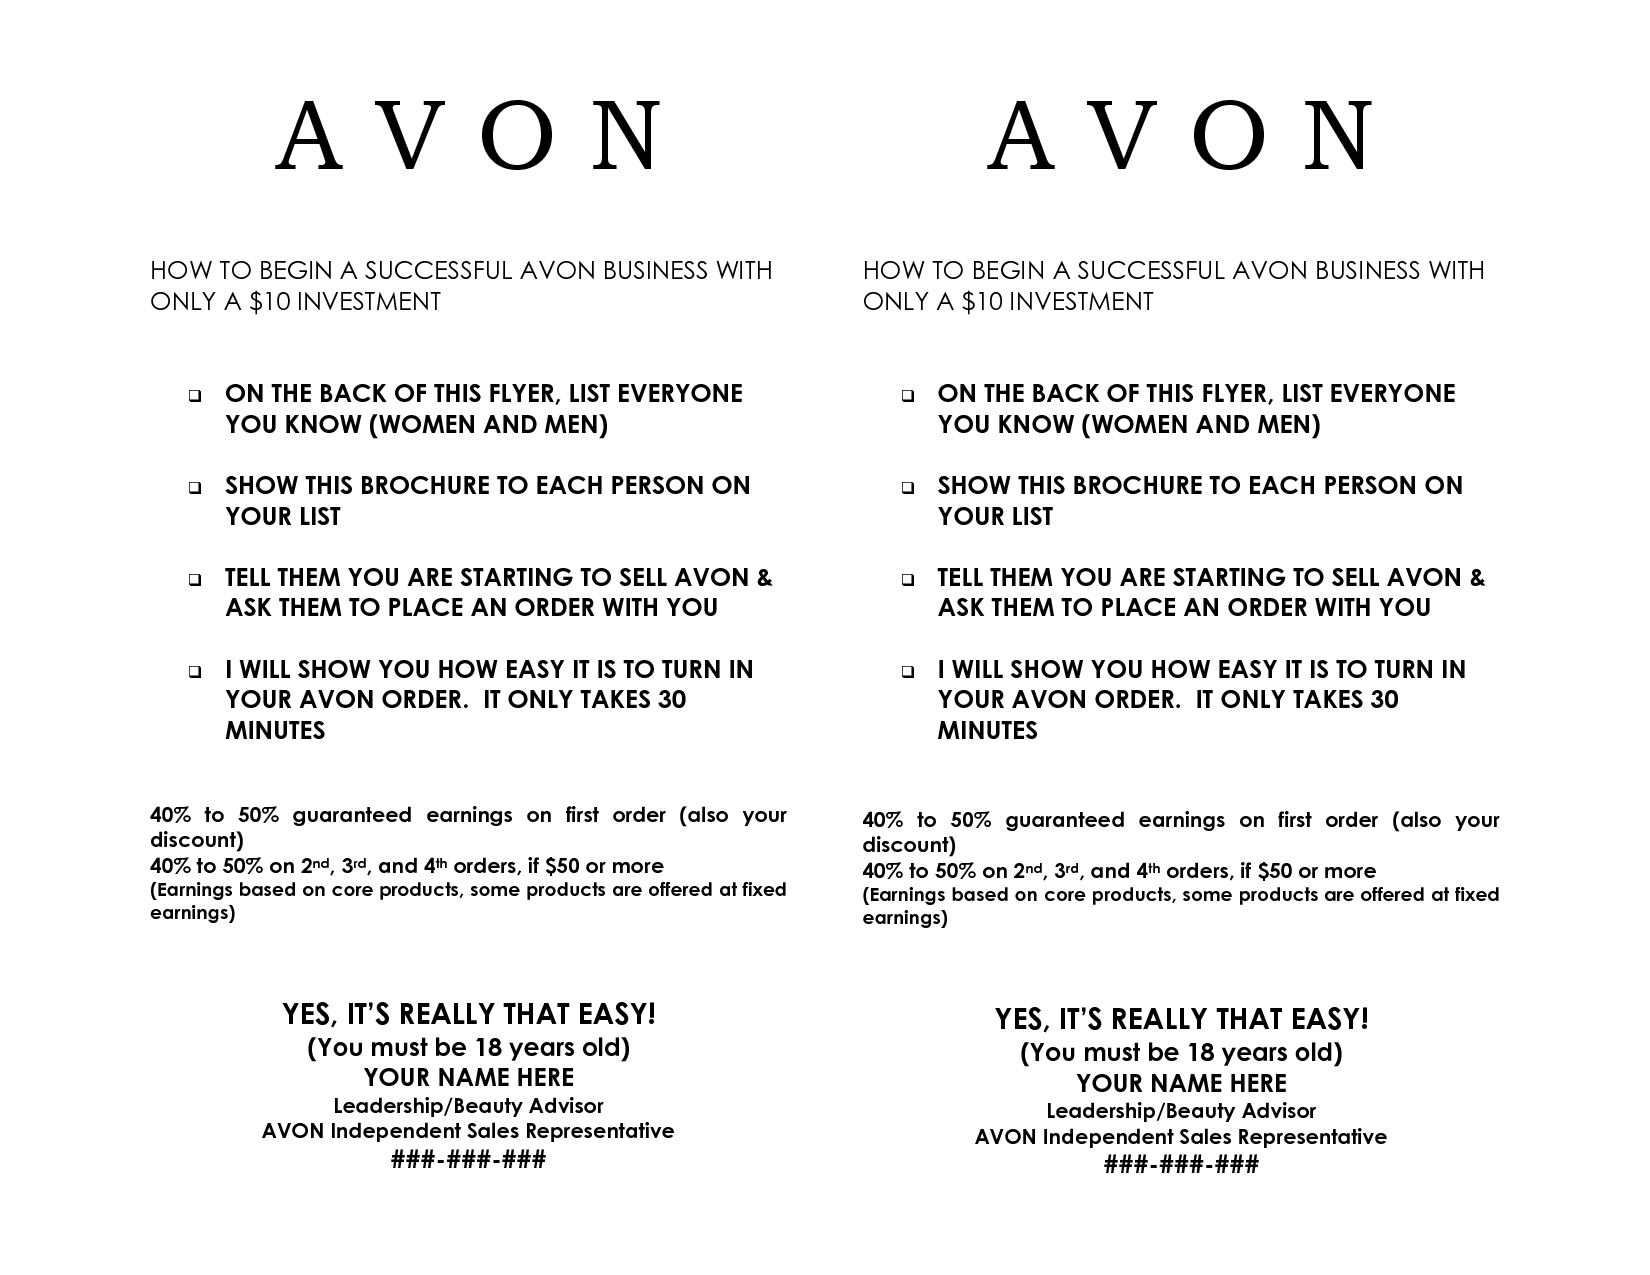 Avon Flyers Templates. Avon Flyers Templates How To Use Avon Samples - Free Printable Avon Flyers